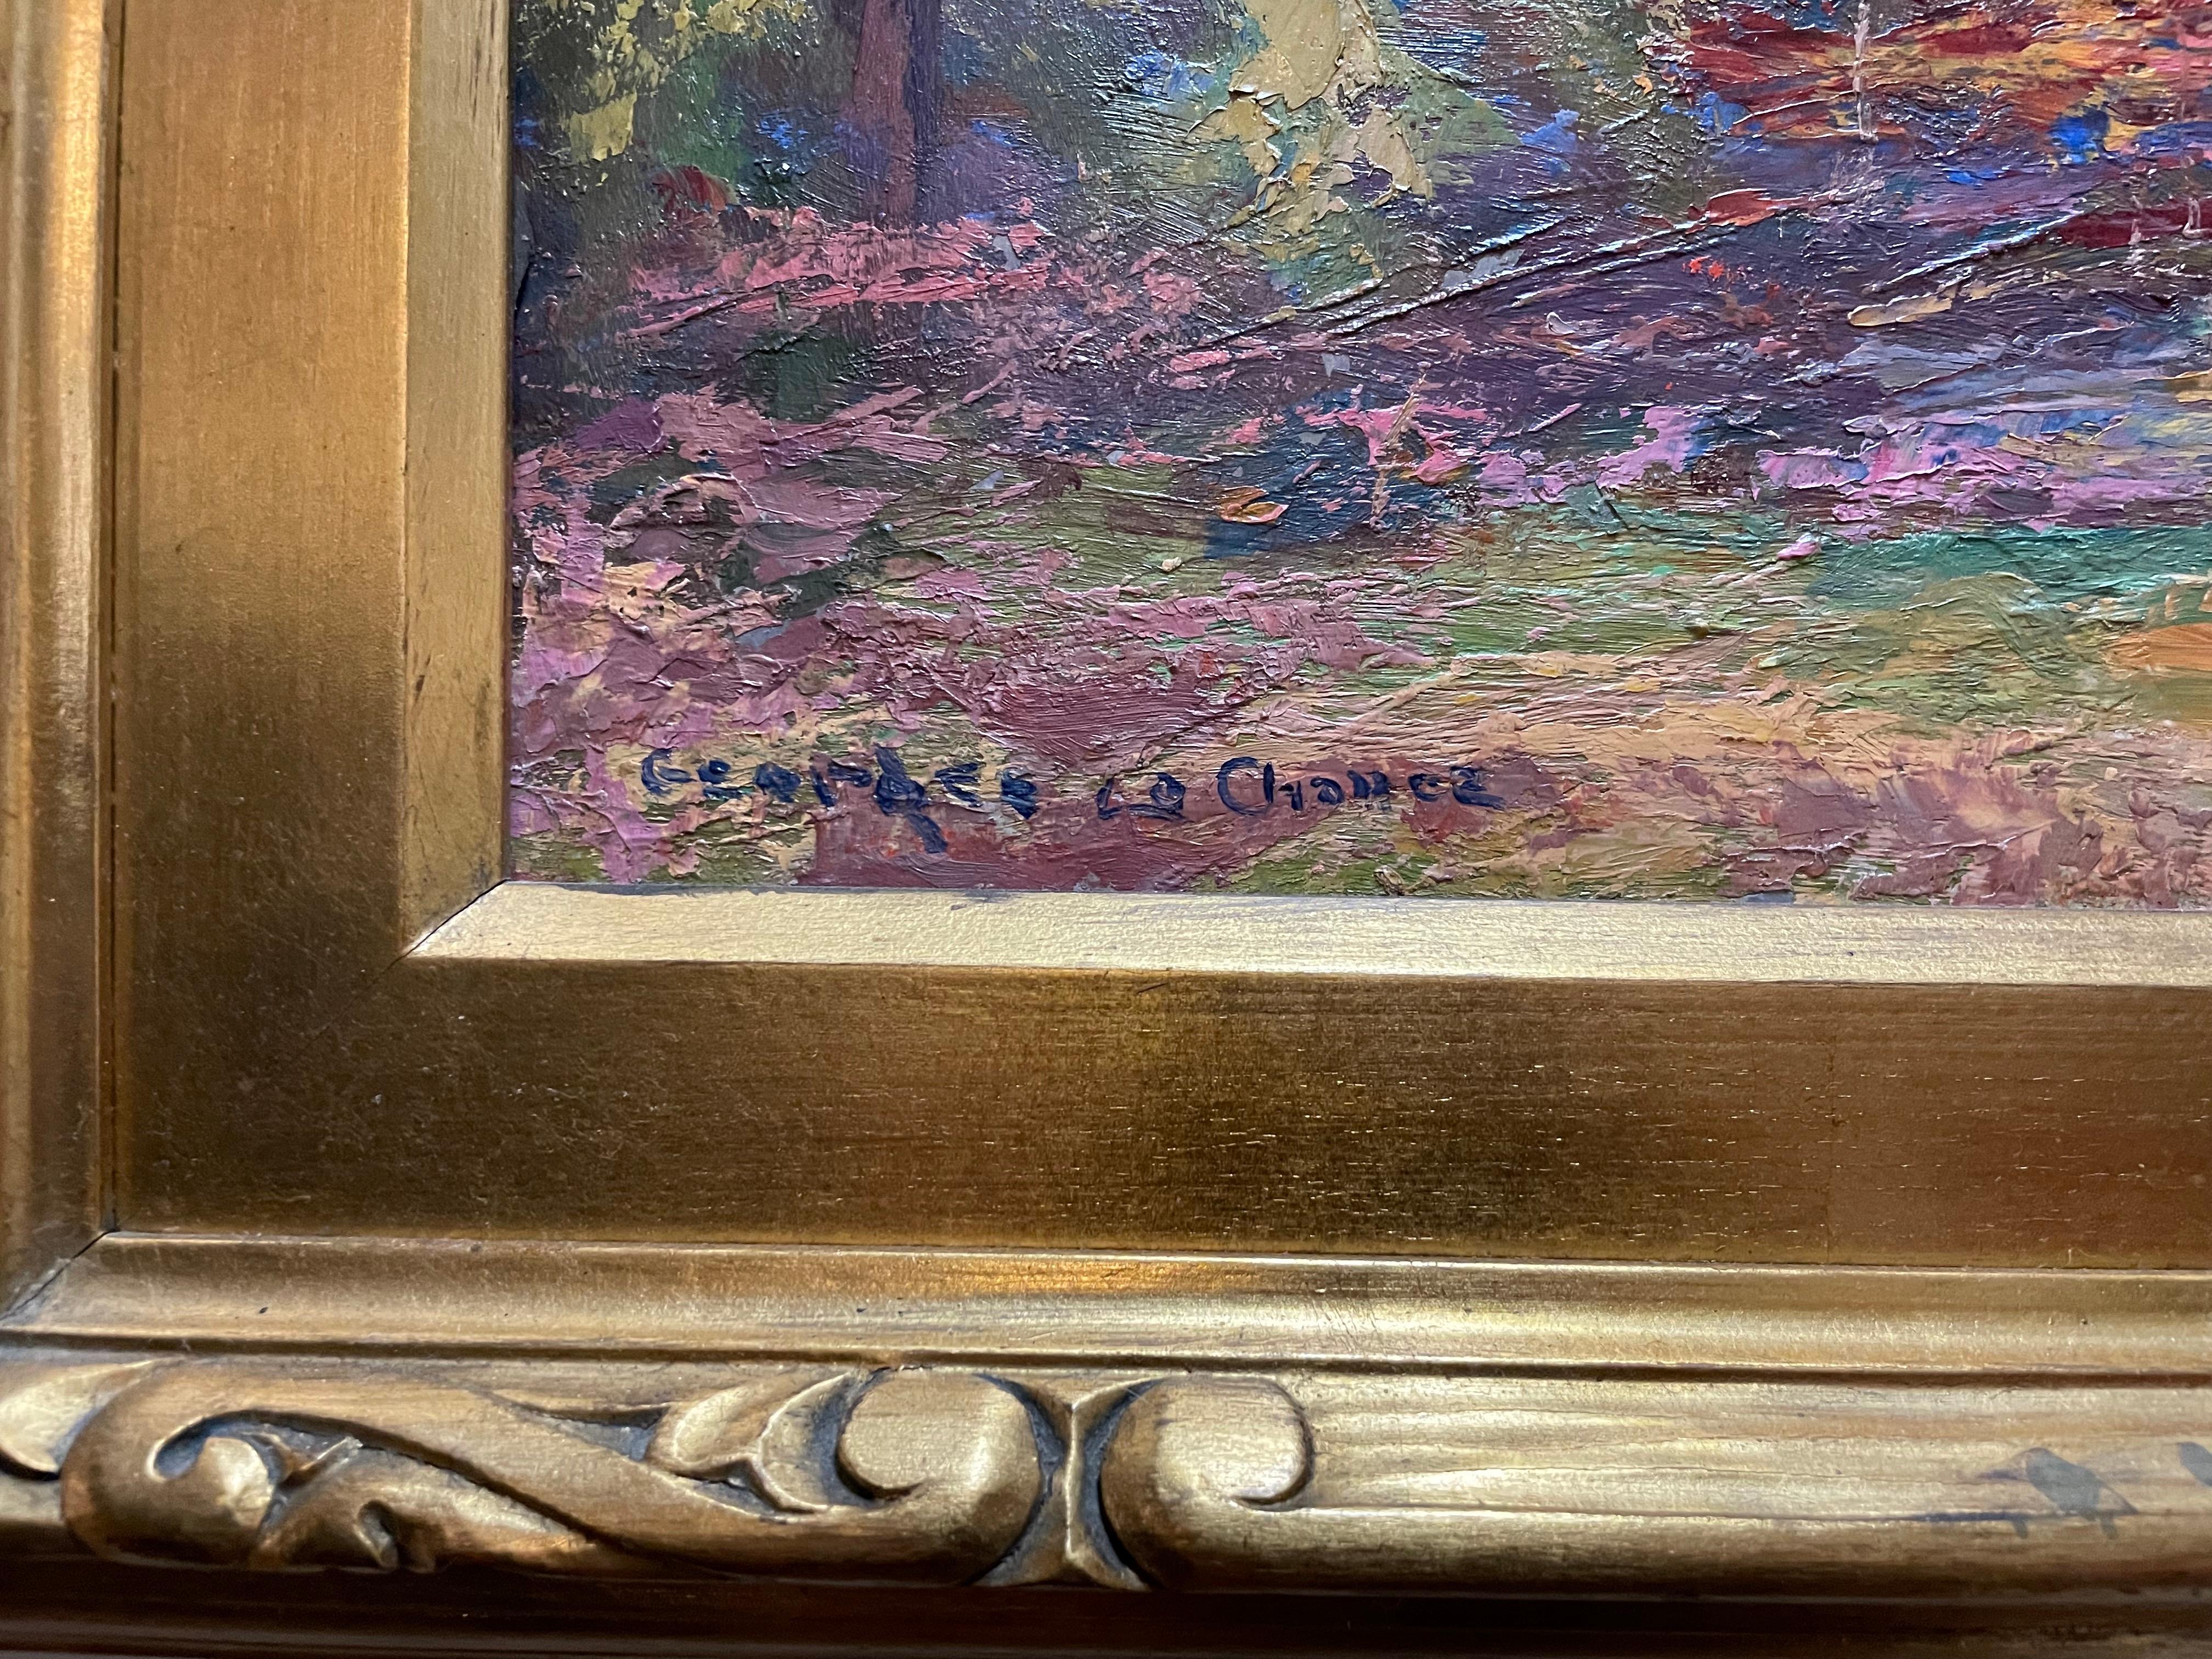 Georges La Chance était un peintre impressionniste, né de 1888 à 1964.

Membre éminent de la colonie artistique du comté de Brown et président de la Guilde d'art du comté de Brown, Georges La Chance a peint les vues pittoresques de la campagne de